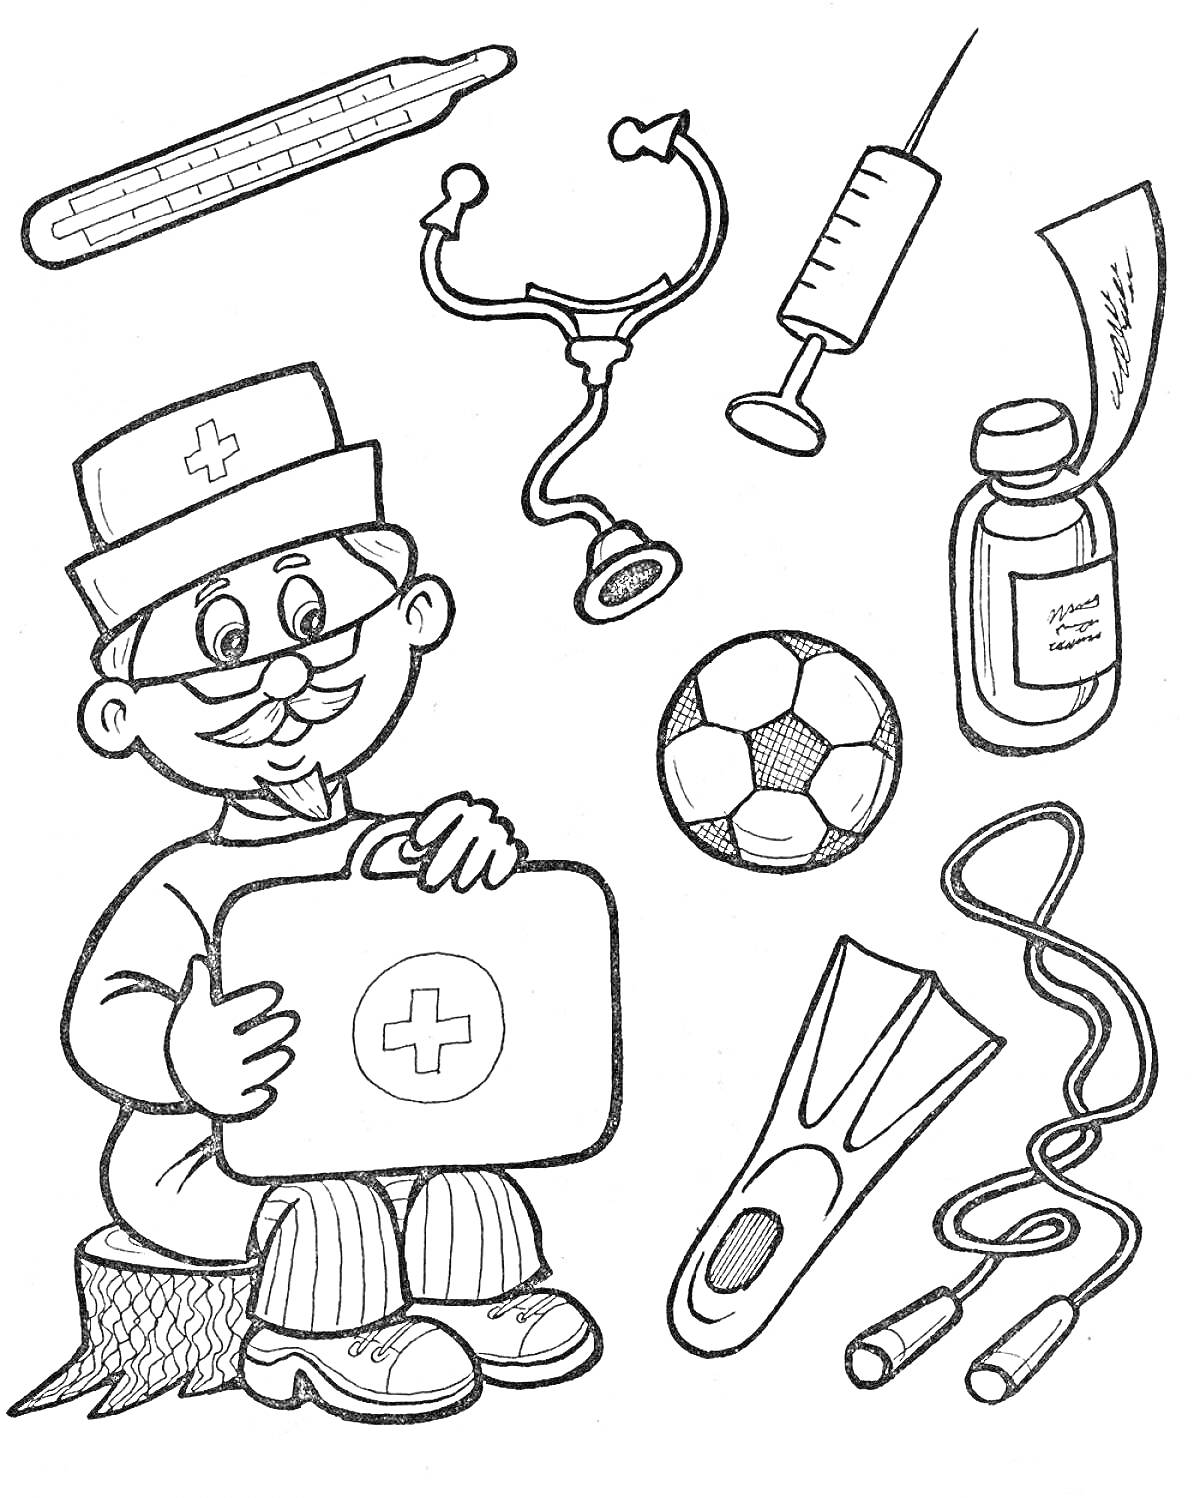 Раскраска Доктор Айболит с медицинскими инструментами и спортивным оборудованием